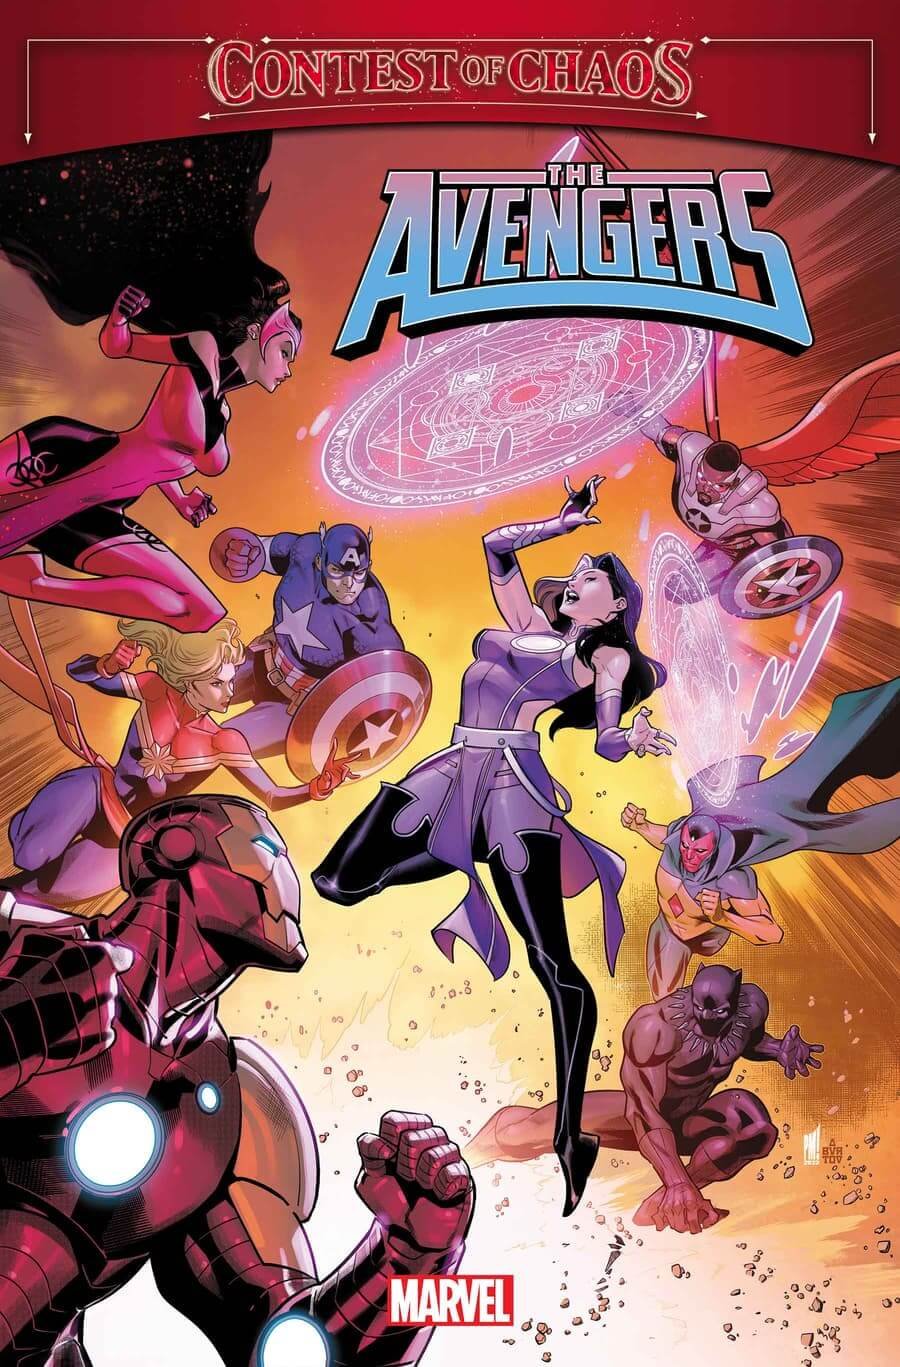 Couverture de Avengers Annual par Paco Medina, finale de Contest of Chaos.